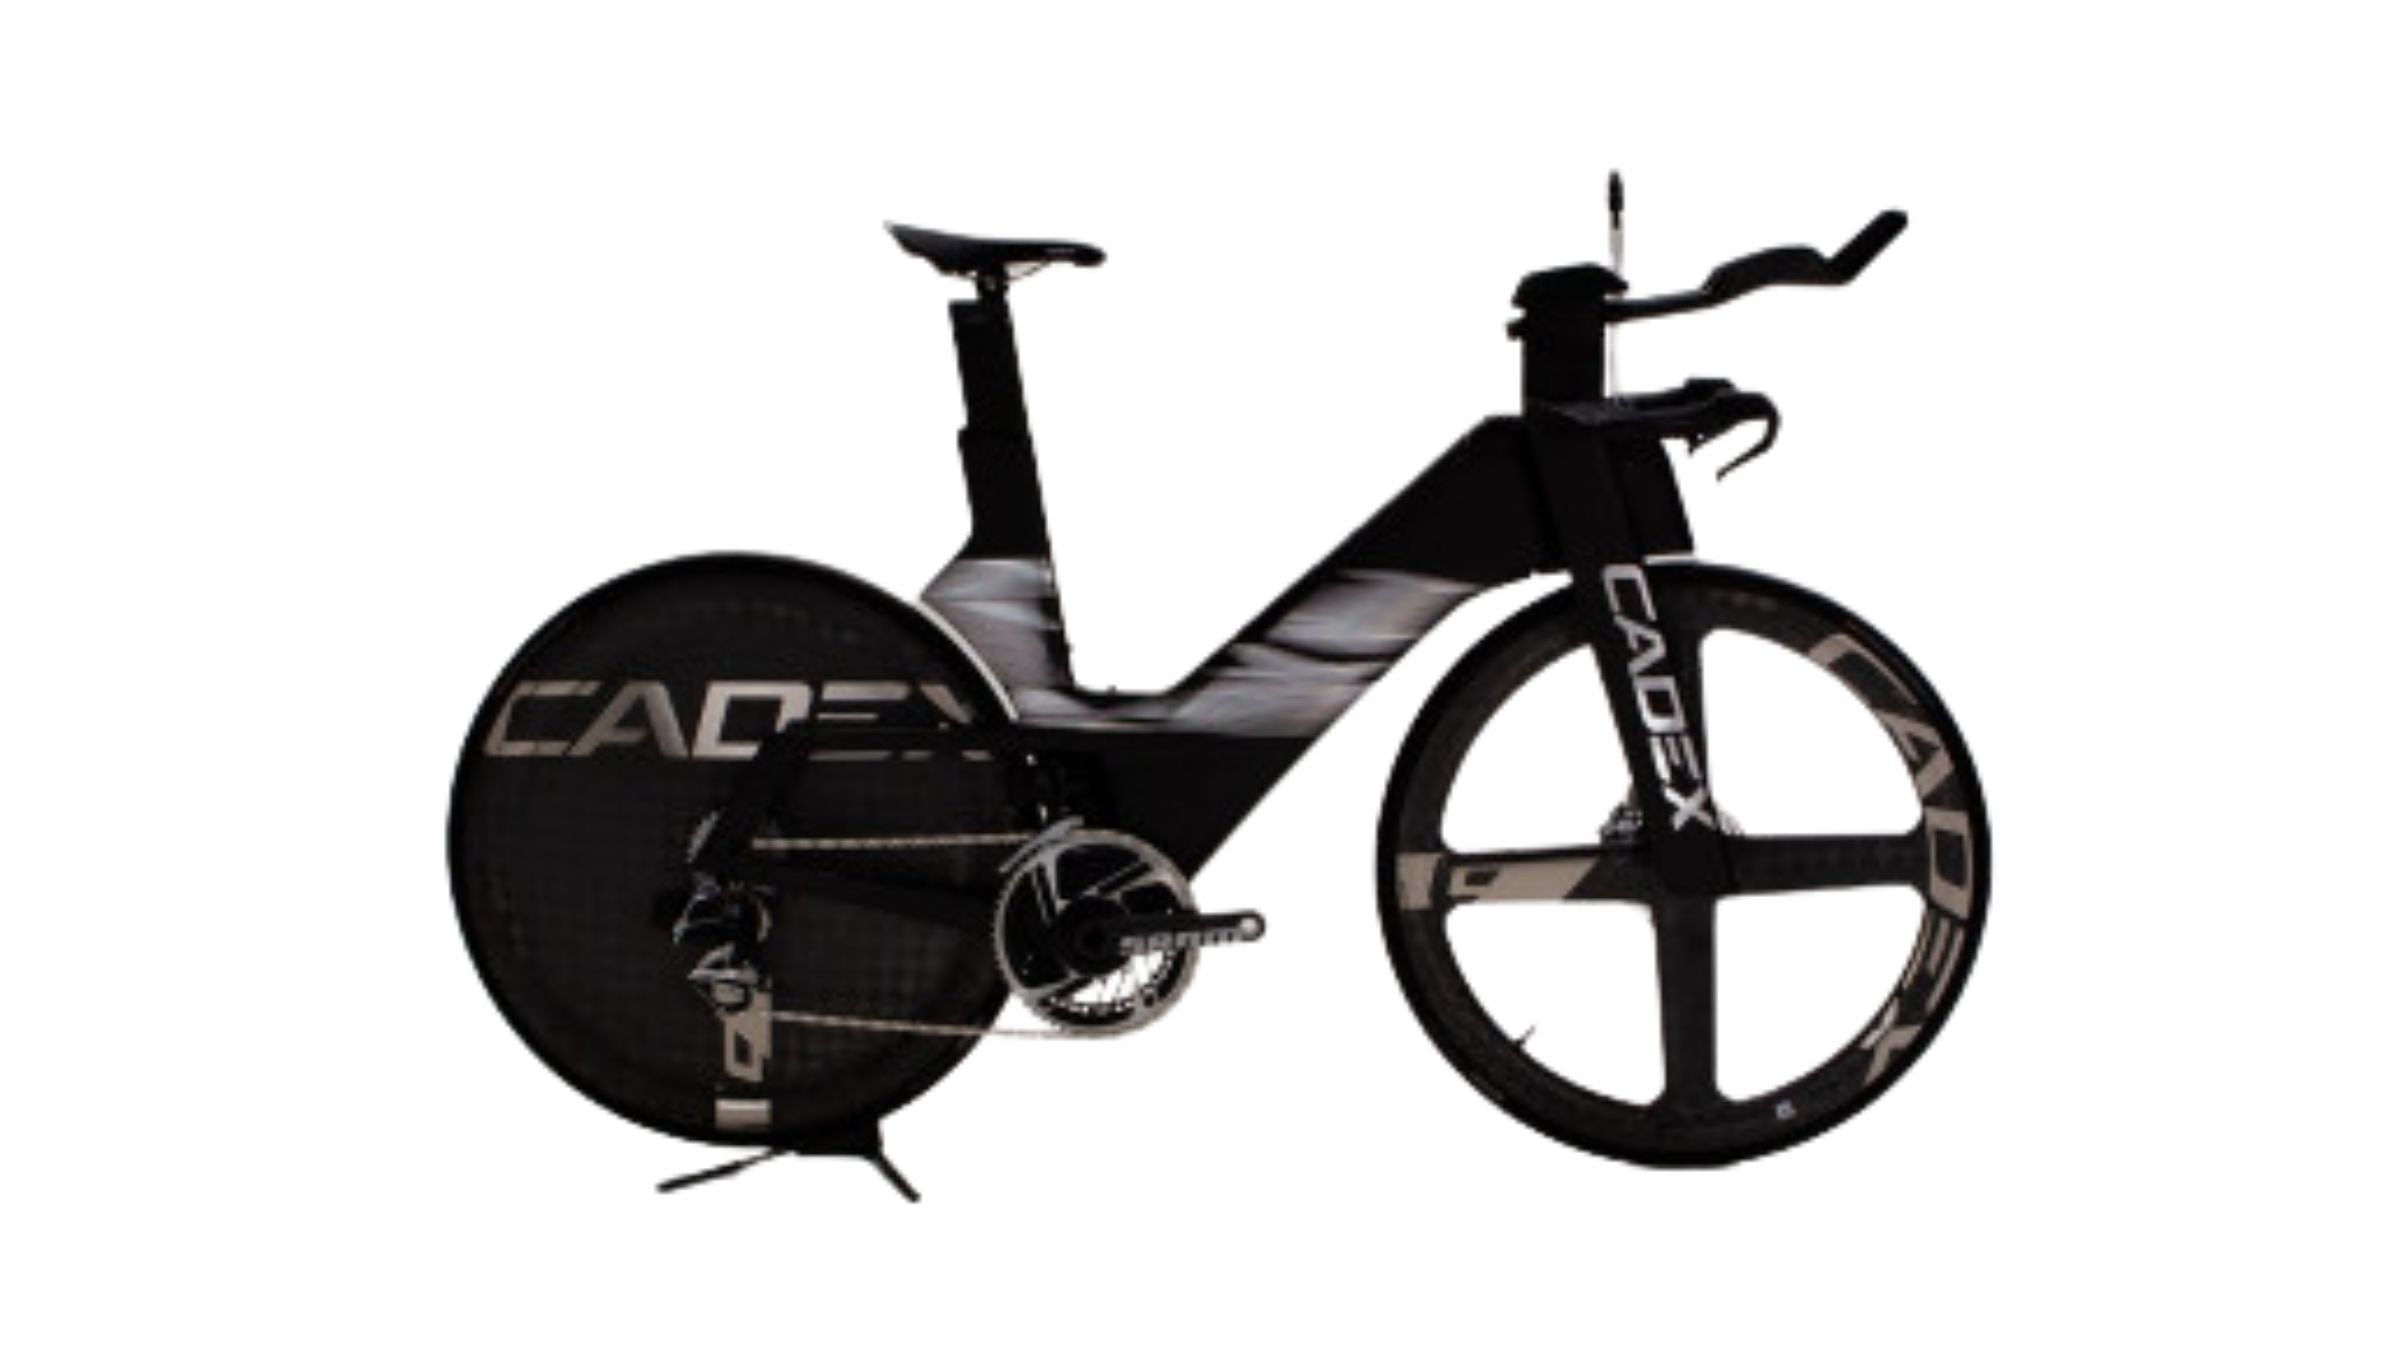 Cadex Tri Bike, one of the best triathlon bikes of 2023